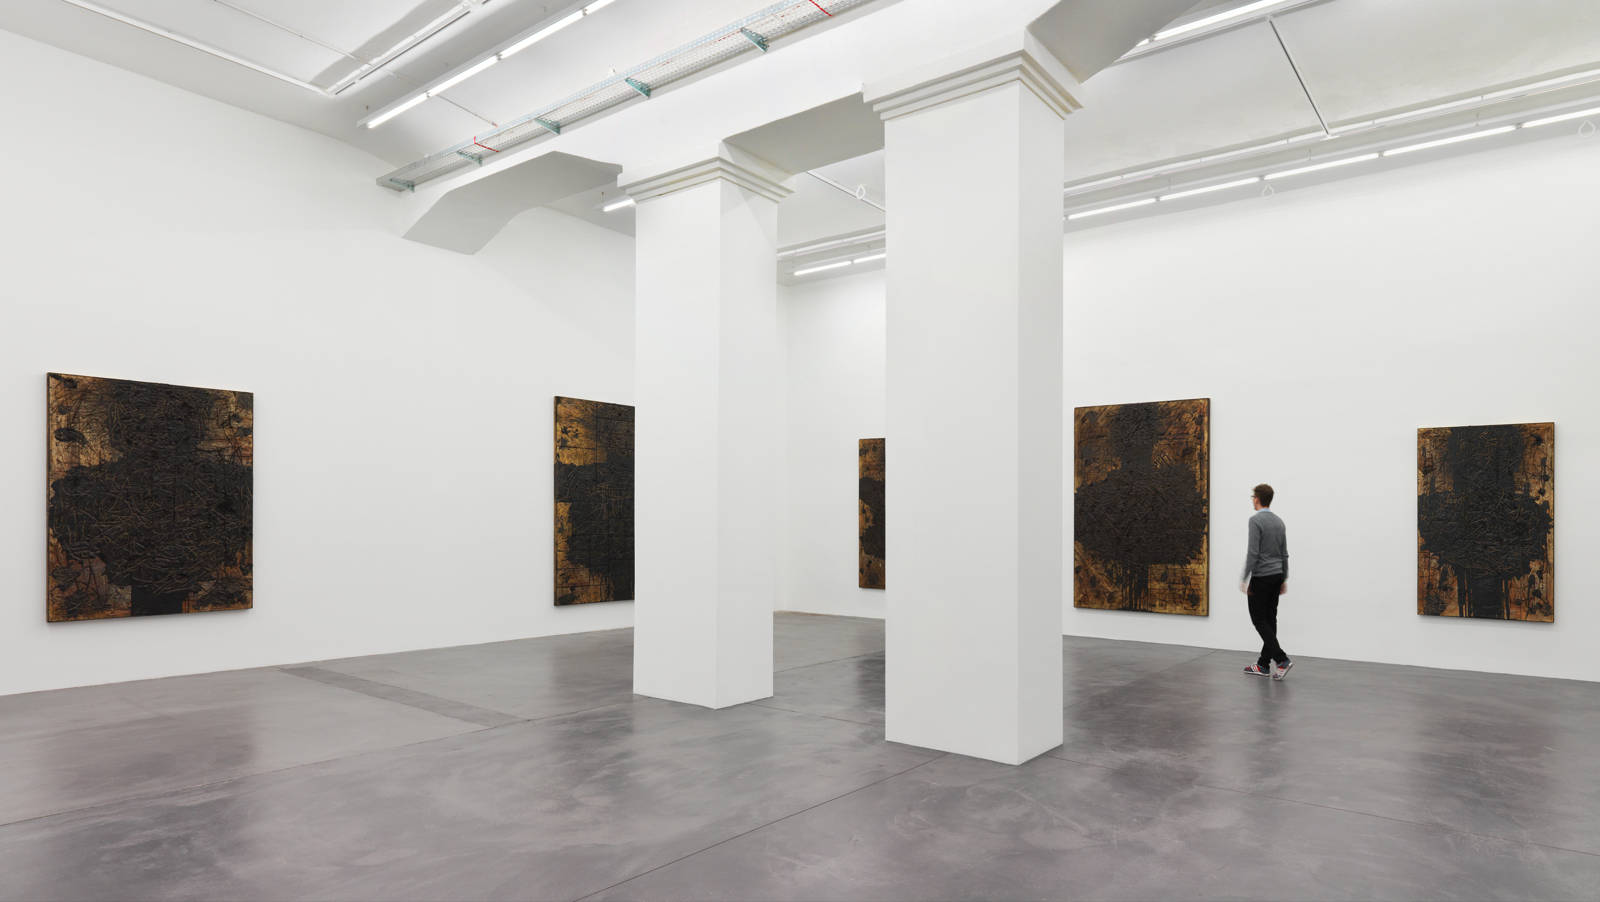 Rashid Johnson / "The Gathering", exhibition view, Hauser & Wirth, Zürich  / 2013